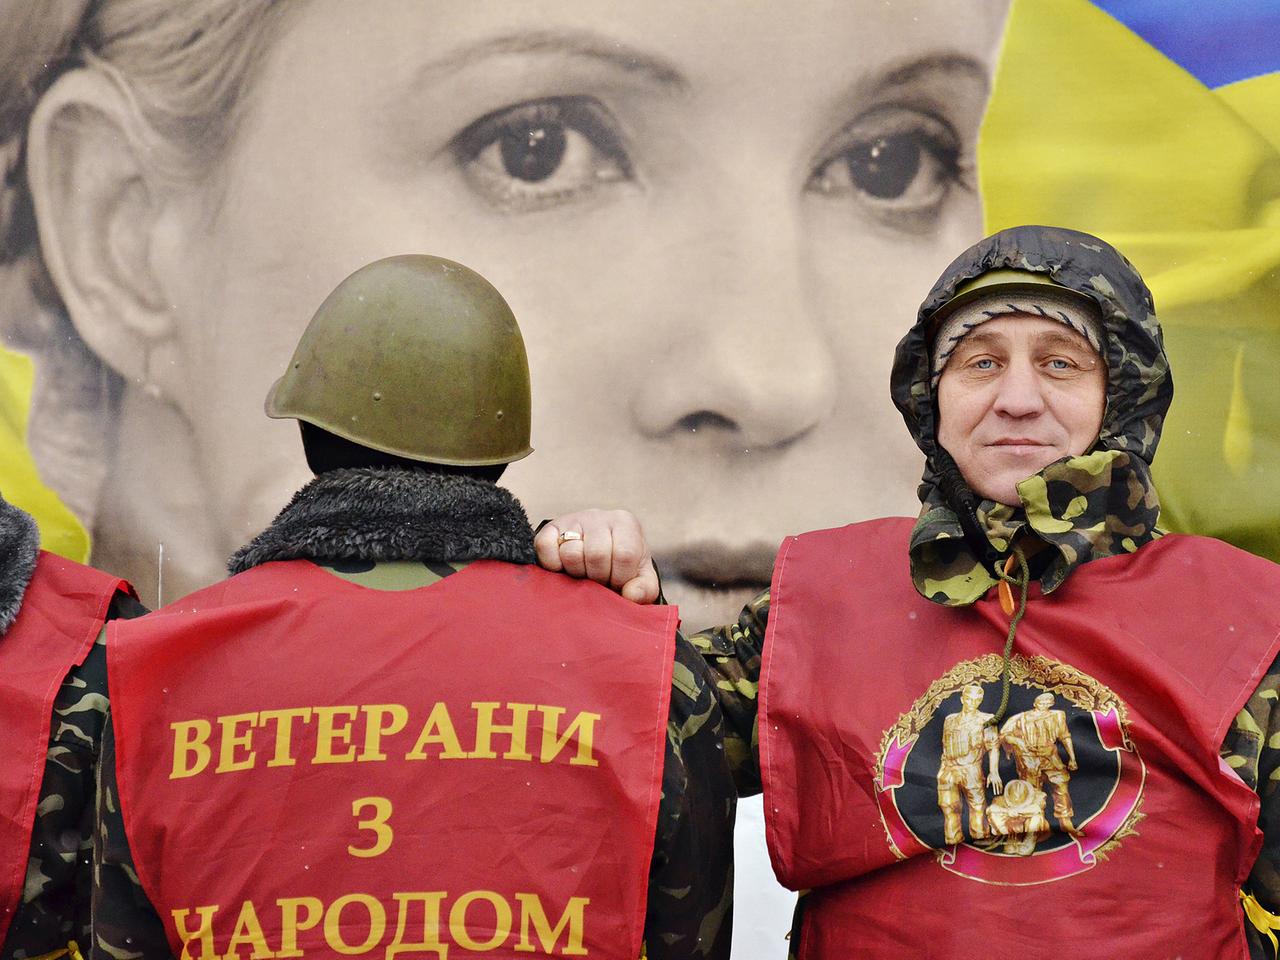 Ein Plakat der ukrainischen Oppositionspolitikerin Julia Timoschenko, davor zwei Personen auf dem Unabhängigkeitsplatz in Kiew